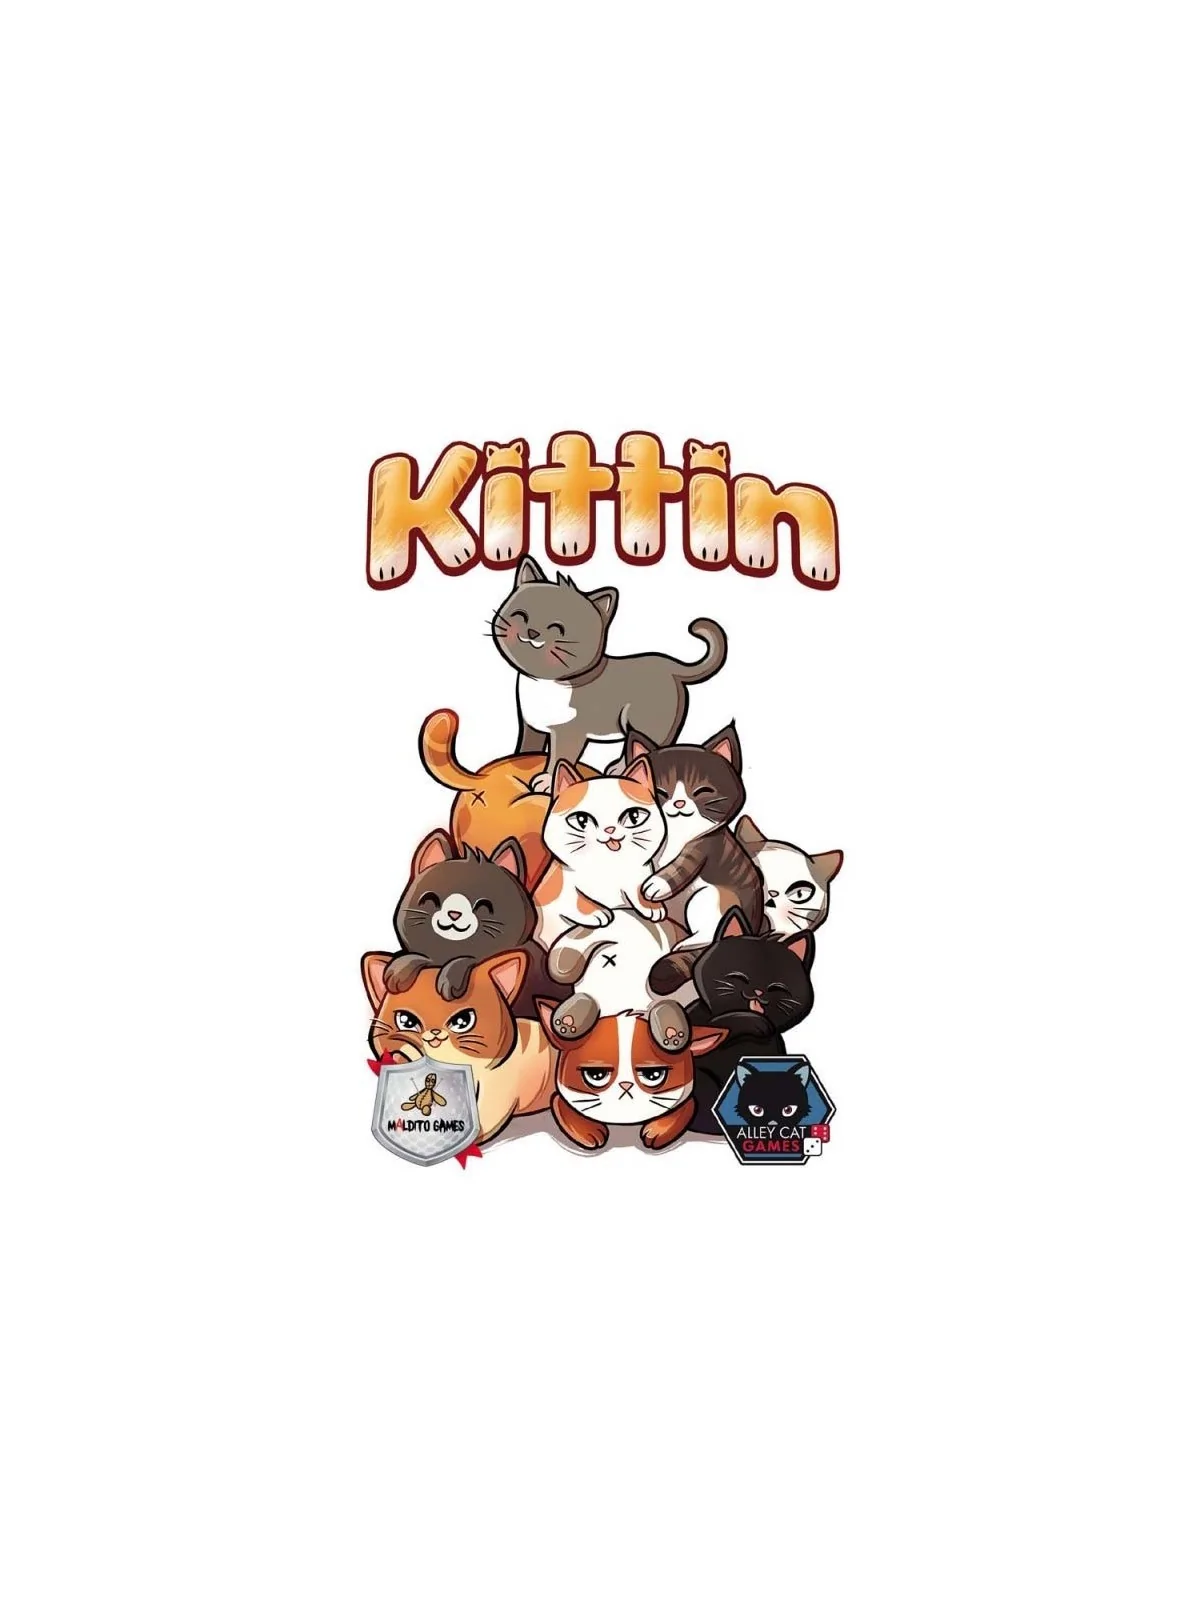 Comprar Kittin barato al mejor precio 10,80 € de Maldito Games